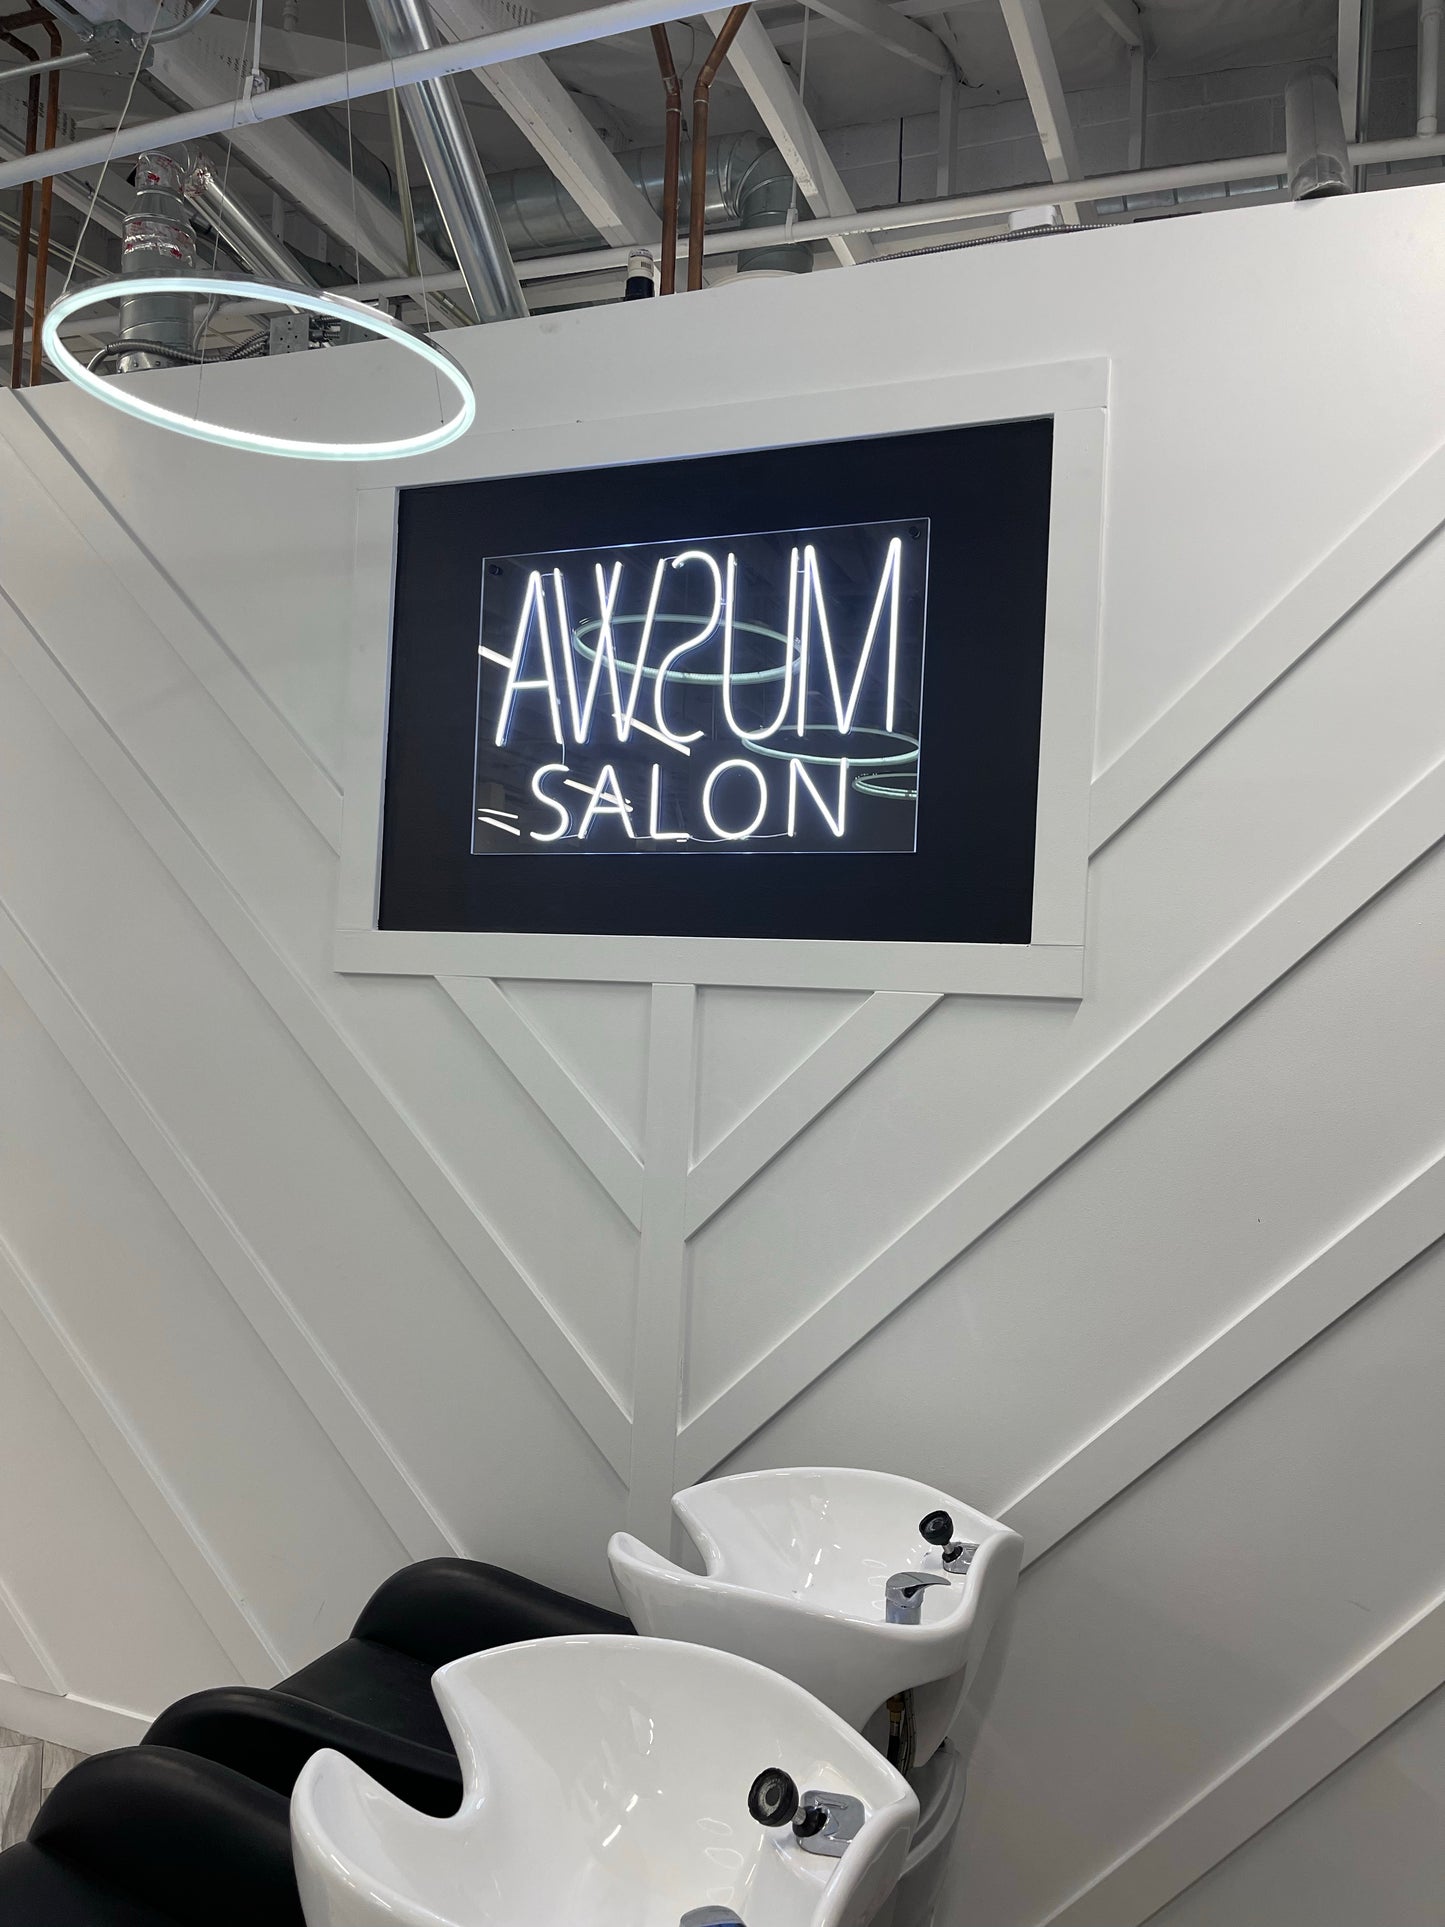 Awsum Hair Salon